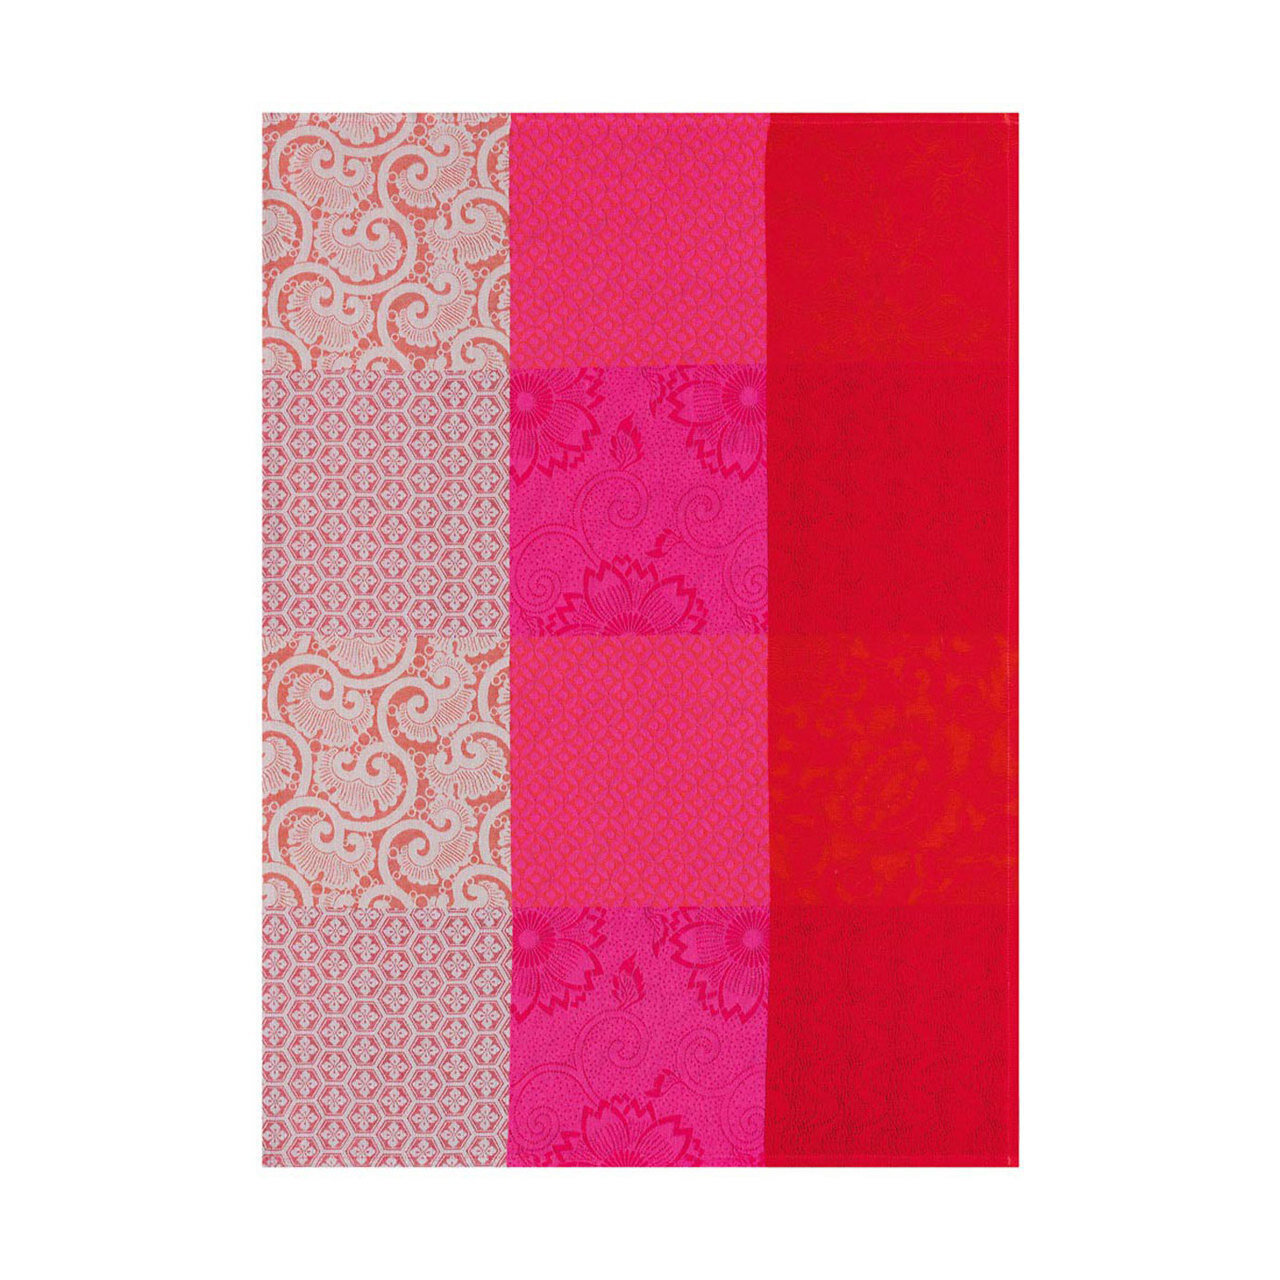 Le Jacquard Francais Tea Towel Fleurs De Kyoto Cherry 24 x 31 Pure Cotton Set of 4